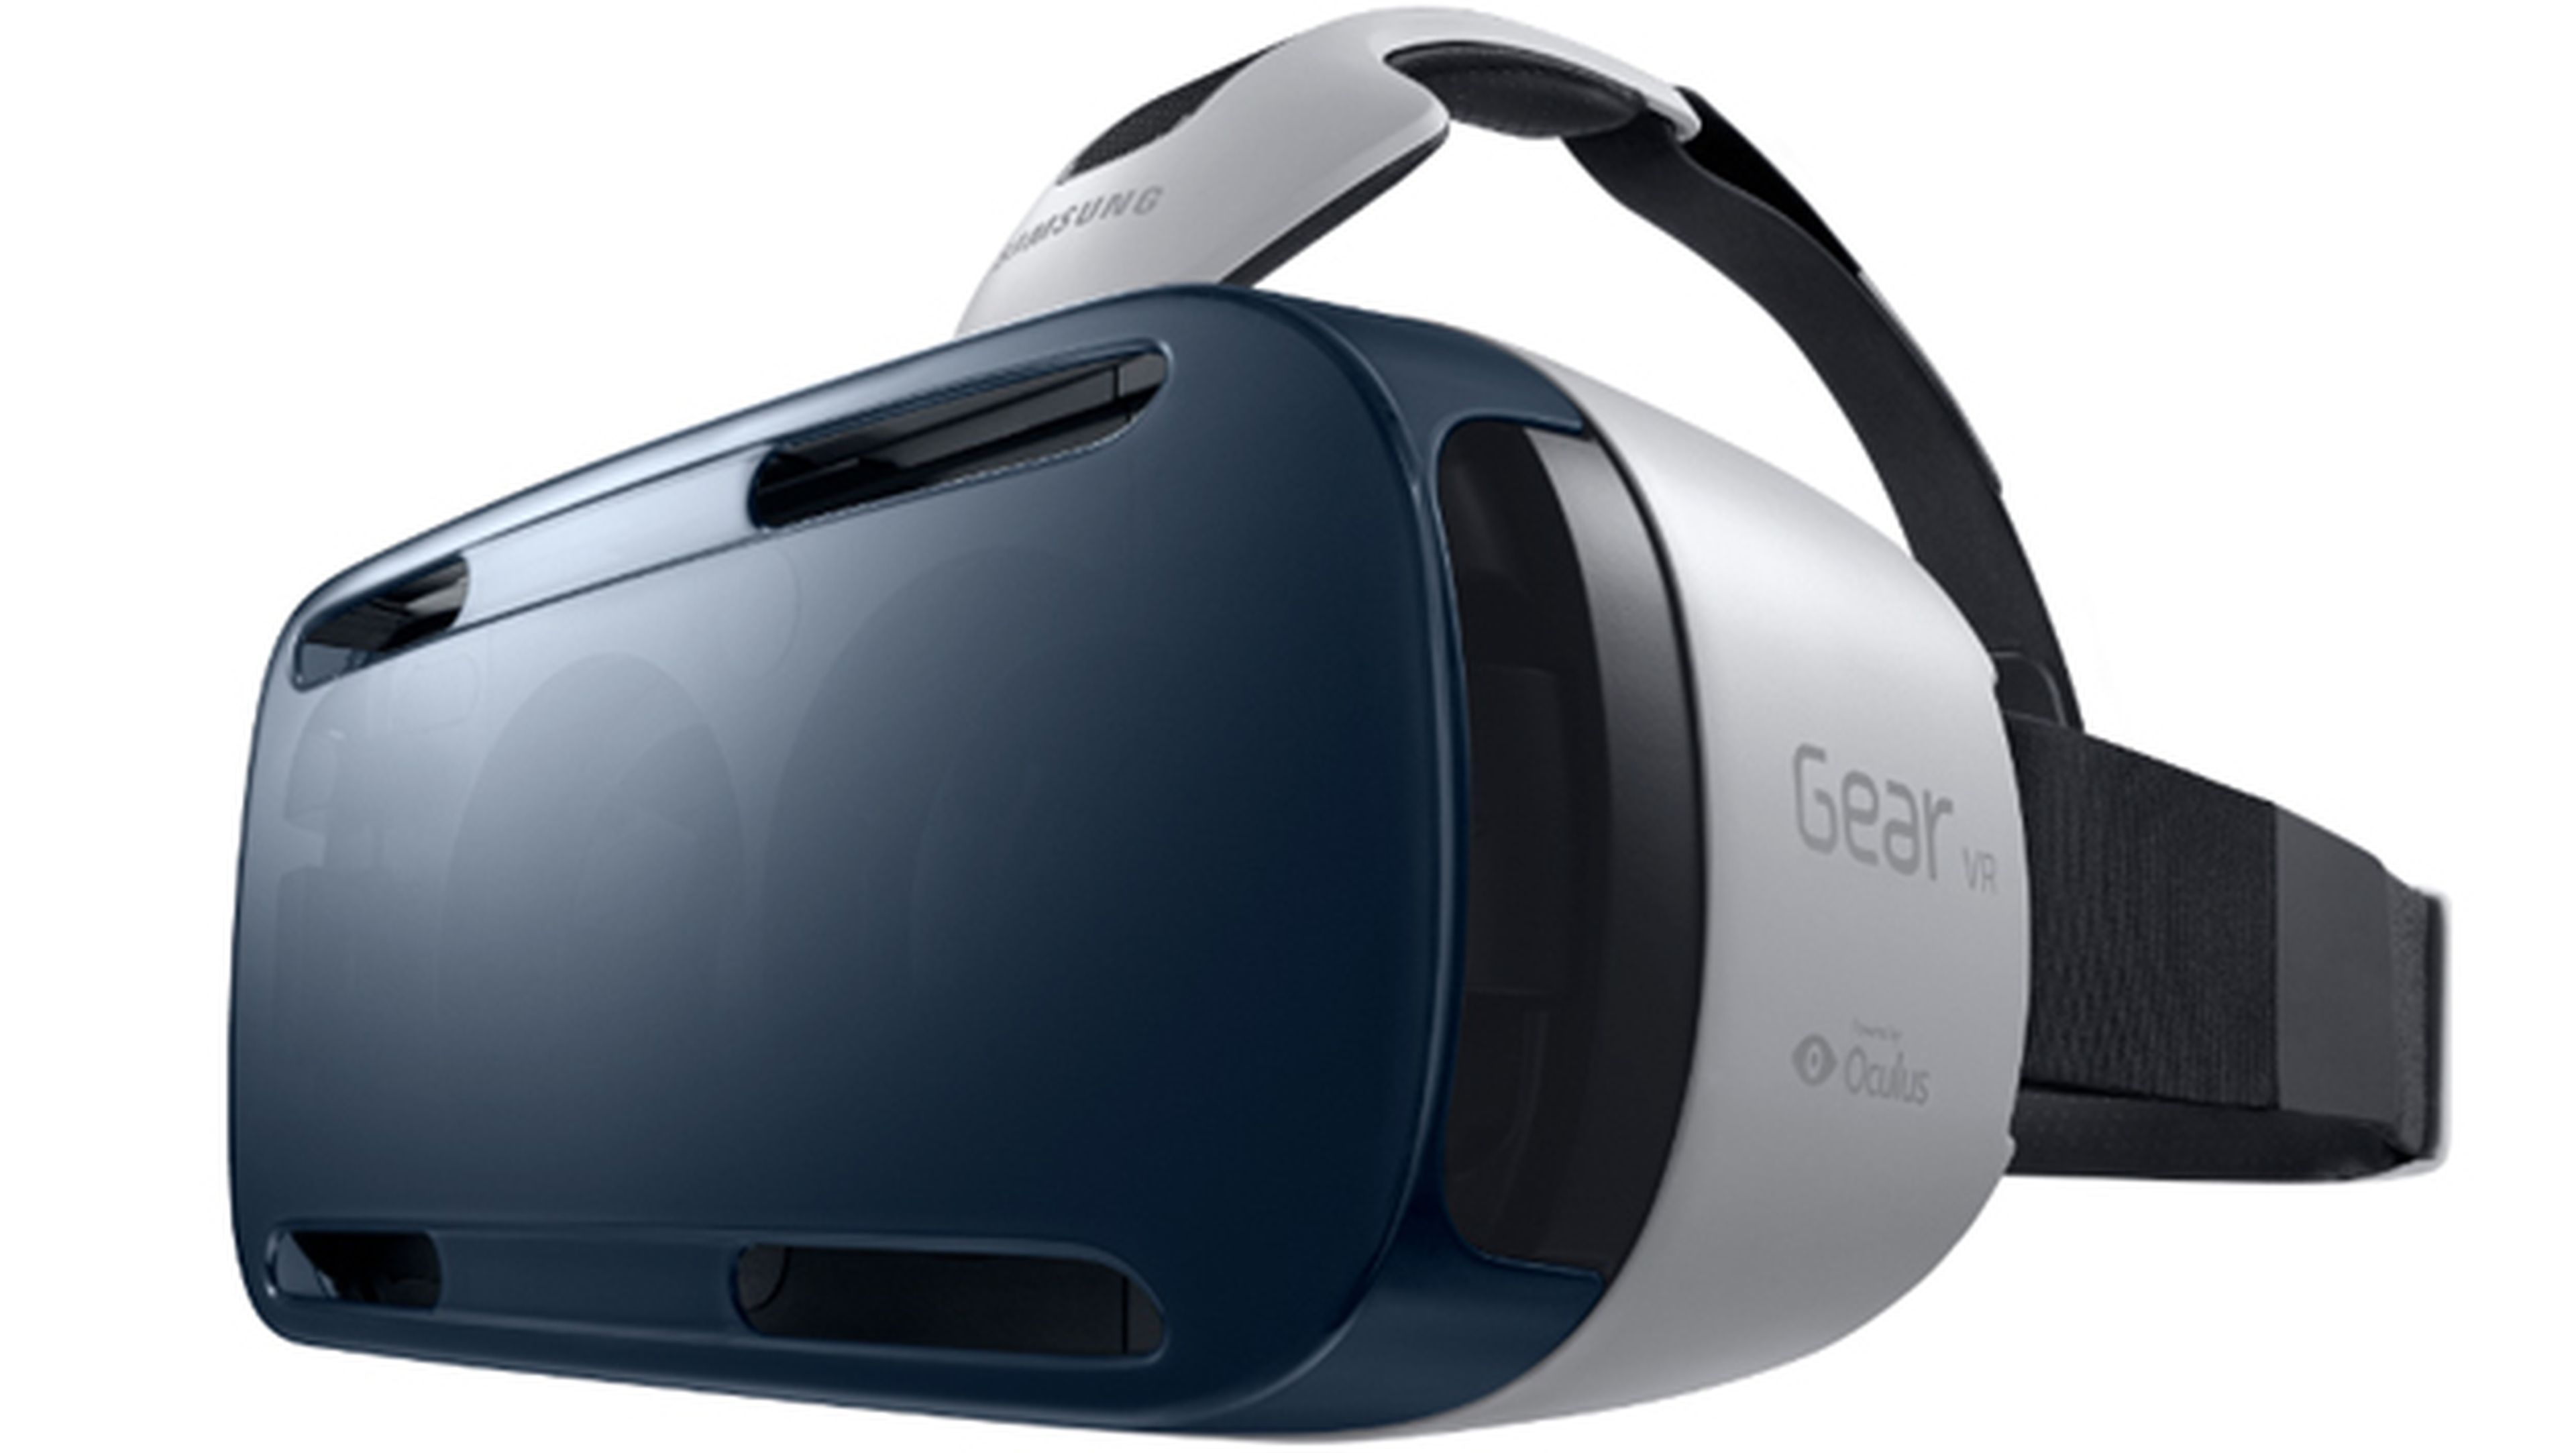 Chaqueta Ballena barba étnico Samsung Gear VR, las gafas de realidad virtual ven la luz | Computer Hoy